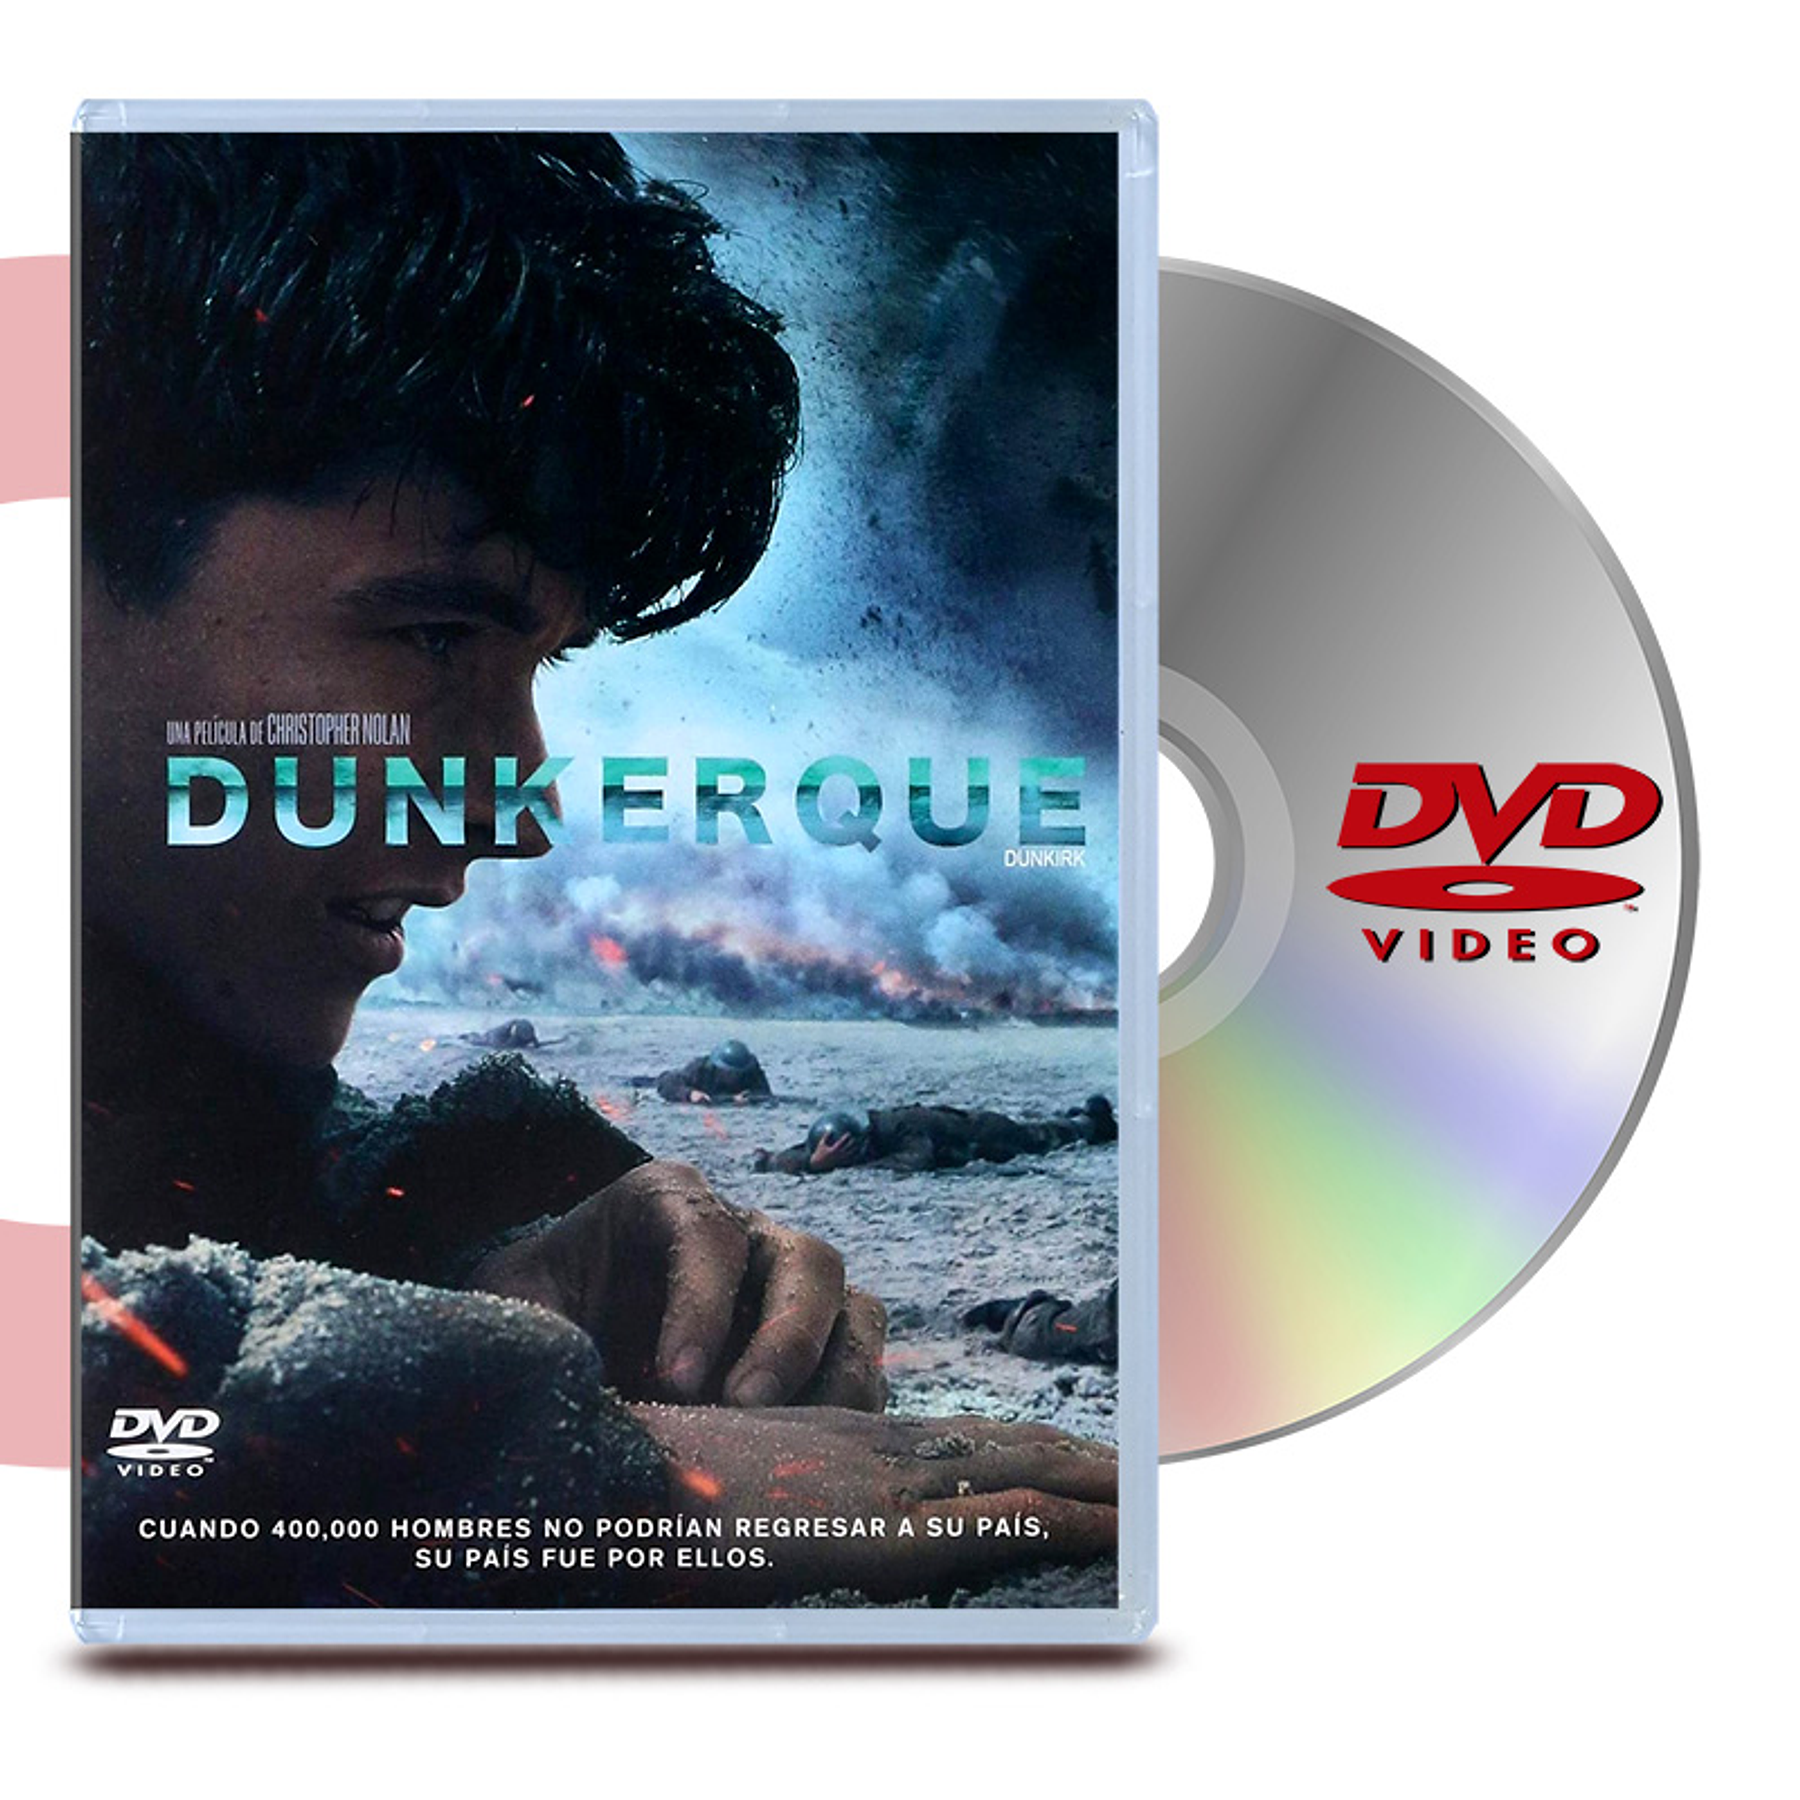 DVD DUNKERQUE